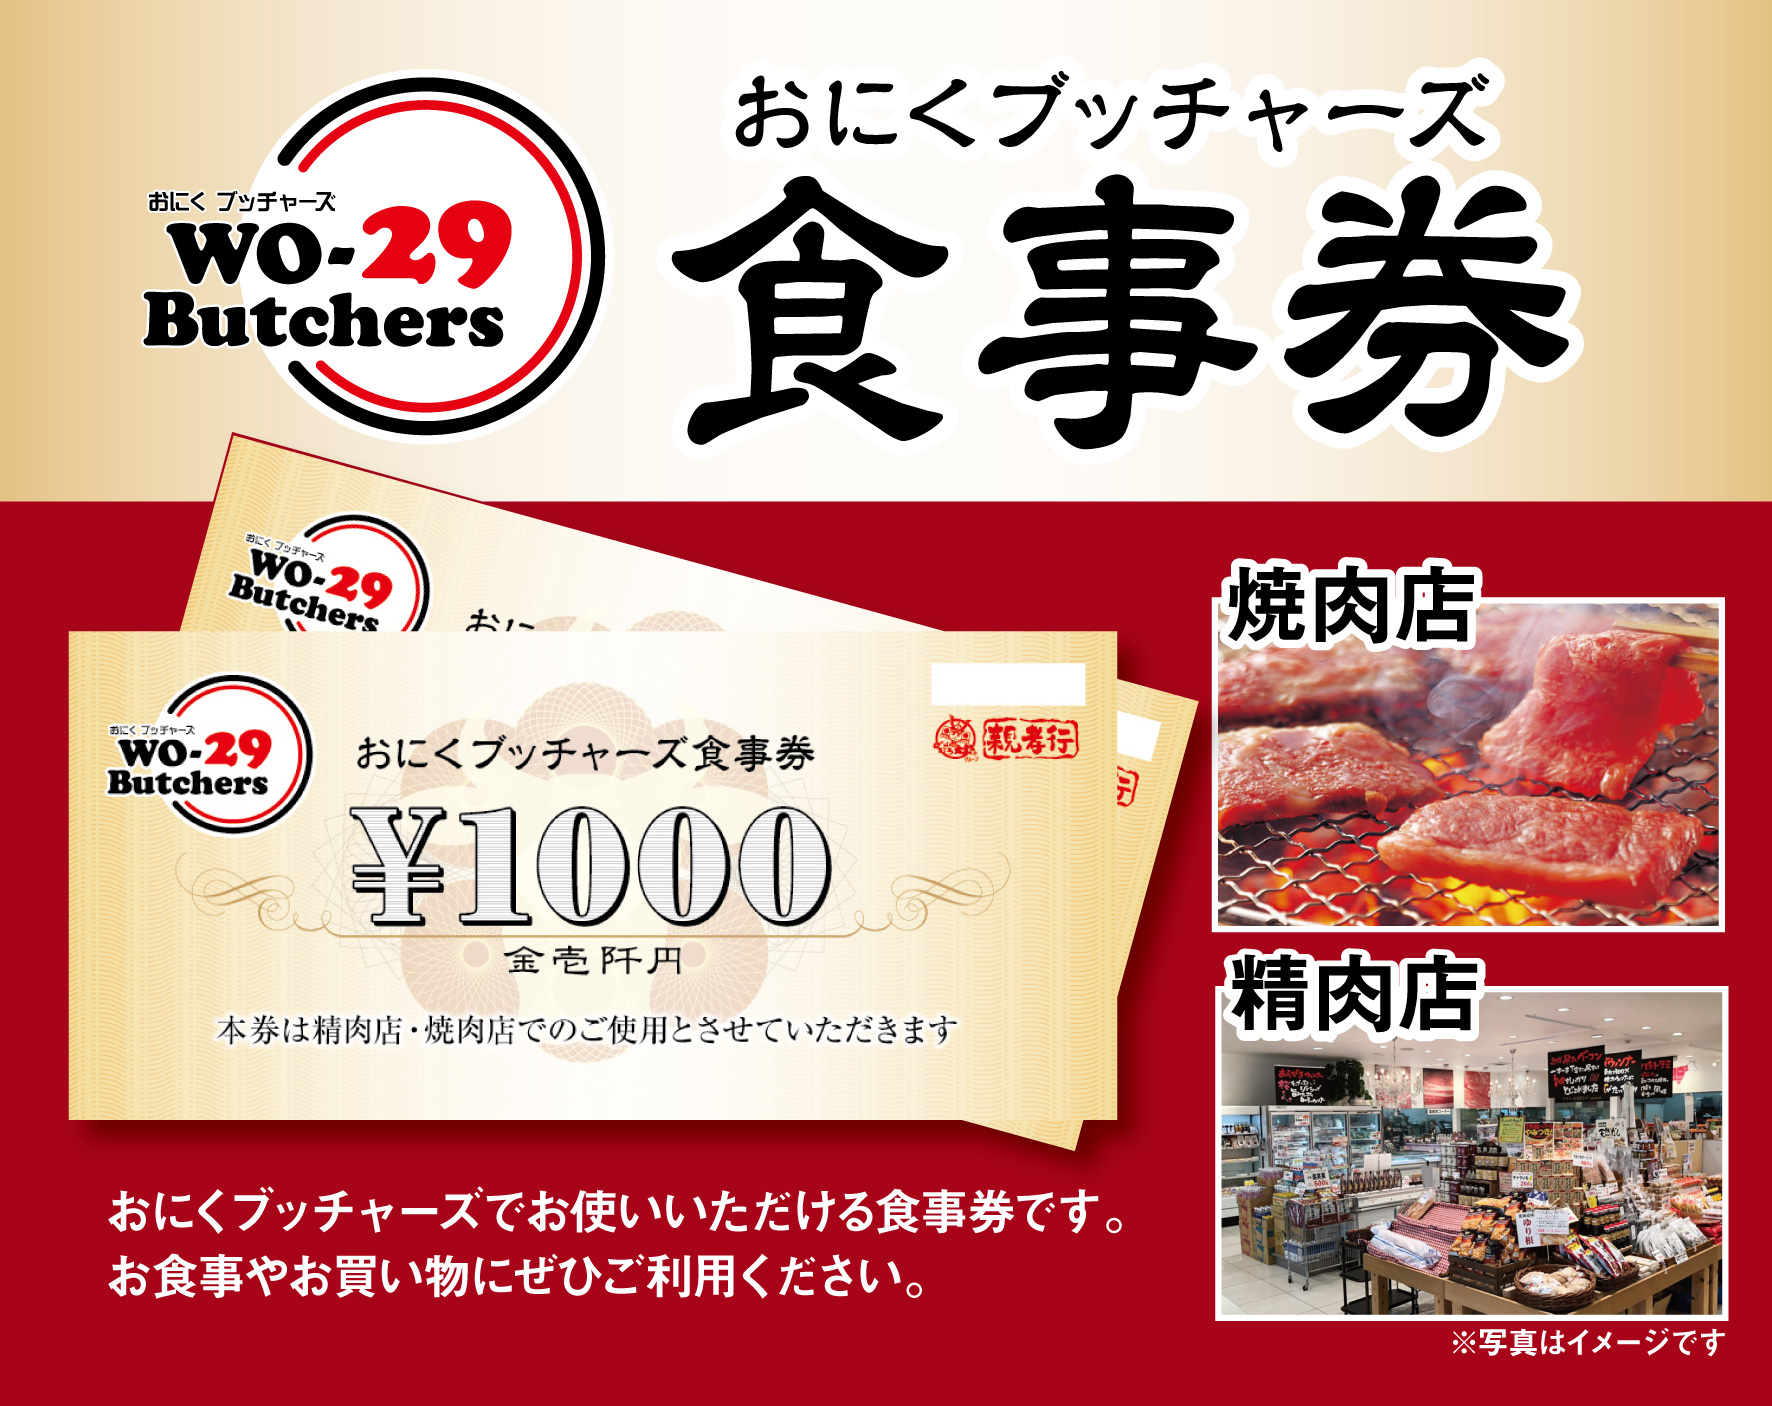 新規オープン店 お肉ブッチャーズ(坂東太郎グループ) お食事券 30,000円分